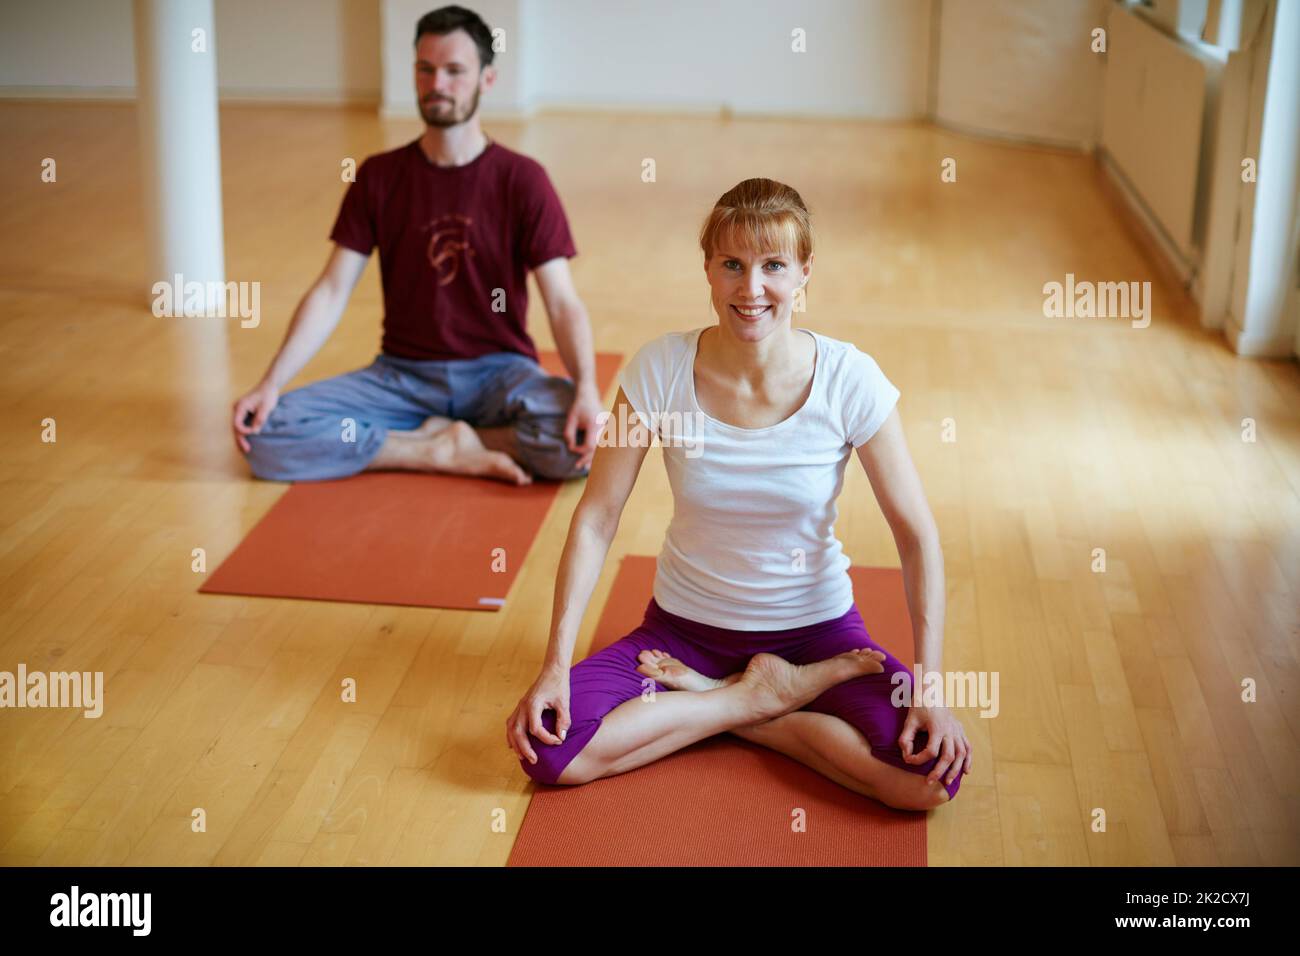 Das beste Workout nach einem anstrengenden Tag. Aufnahme von zwei Menschen, die gemeinsam Yoga in Innenräumen machen. Stockfoto